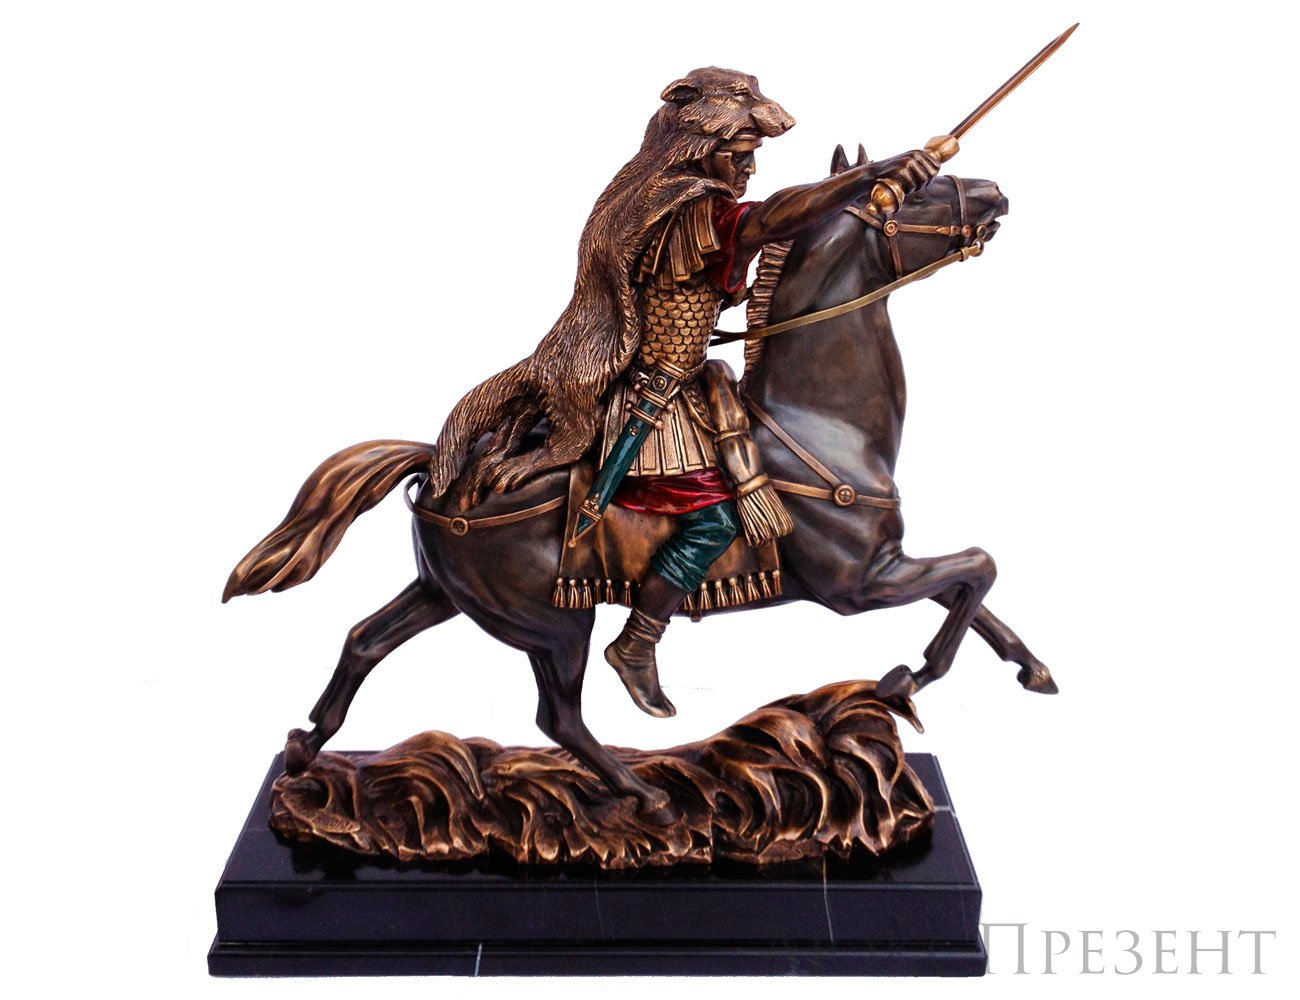 Авторская скульптура из бронзы "Римский воин на коне"